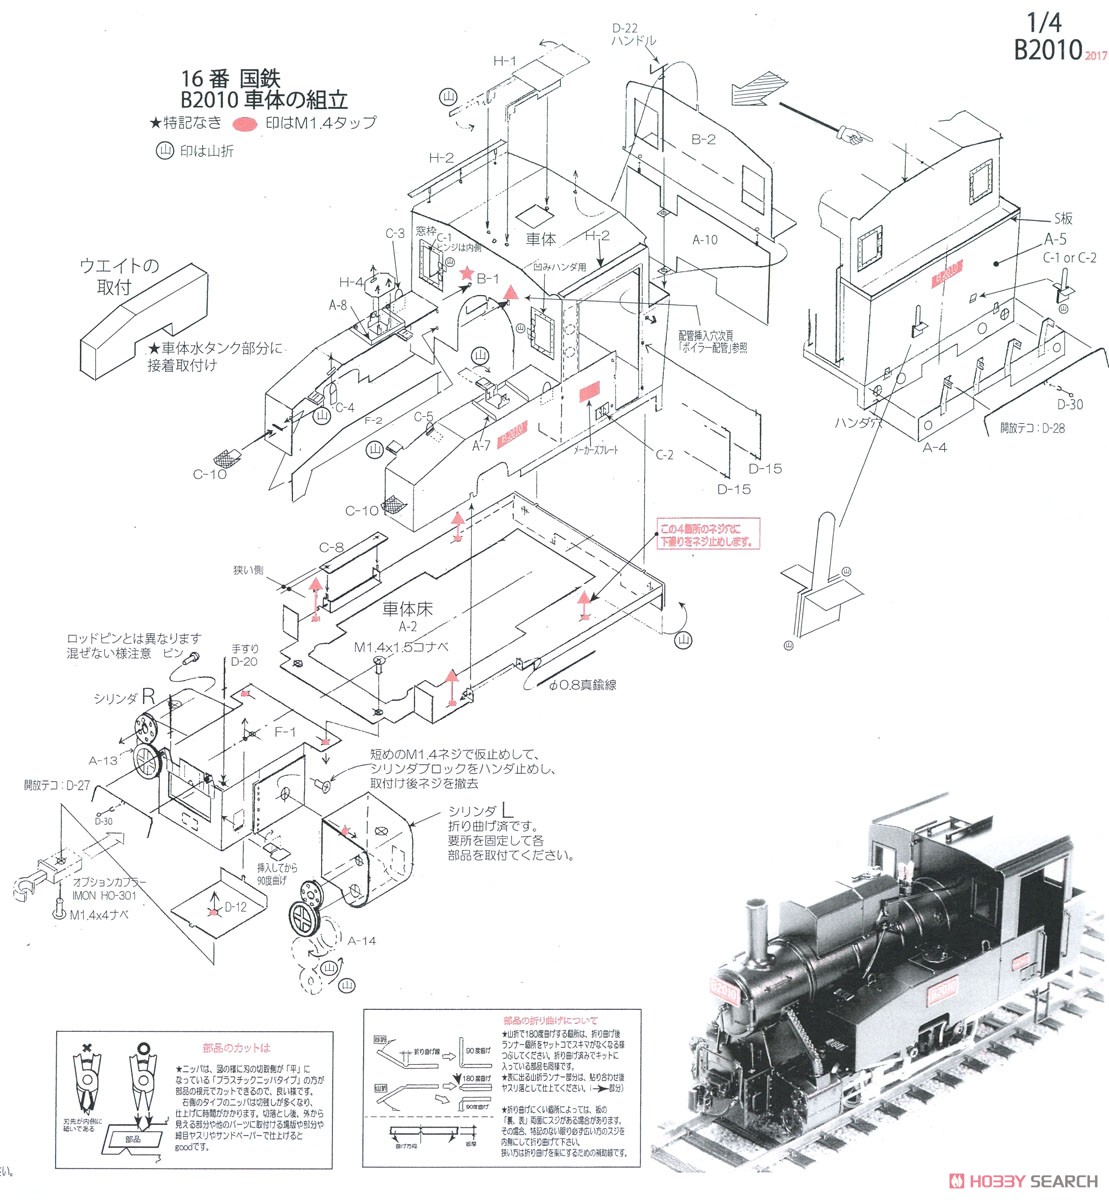 16番(HO) 国鉄 B20 10号機 II 蒸気機関車 組立キット リニューアル品 (組み立てキット) (鉄道模型) 設計図1